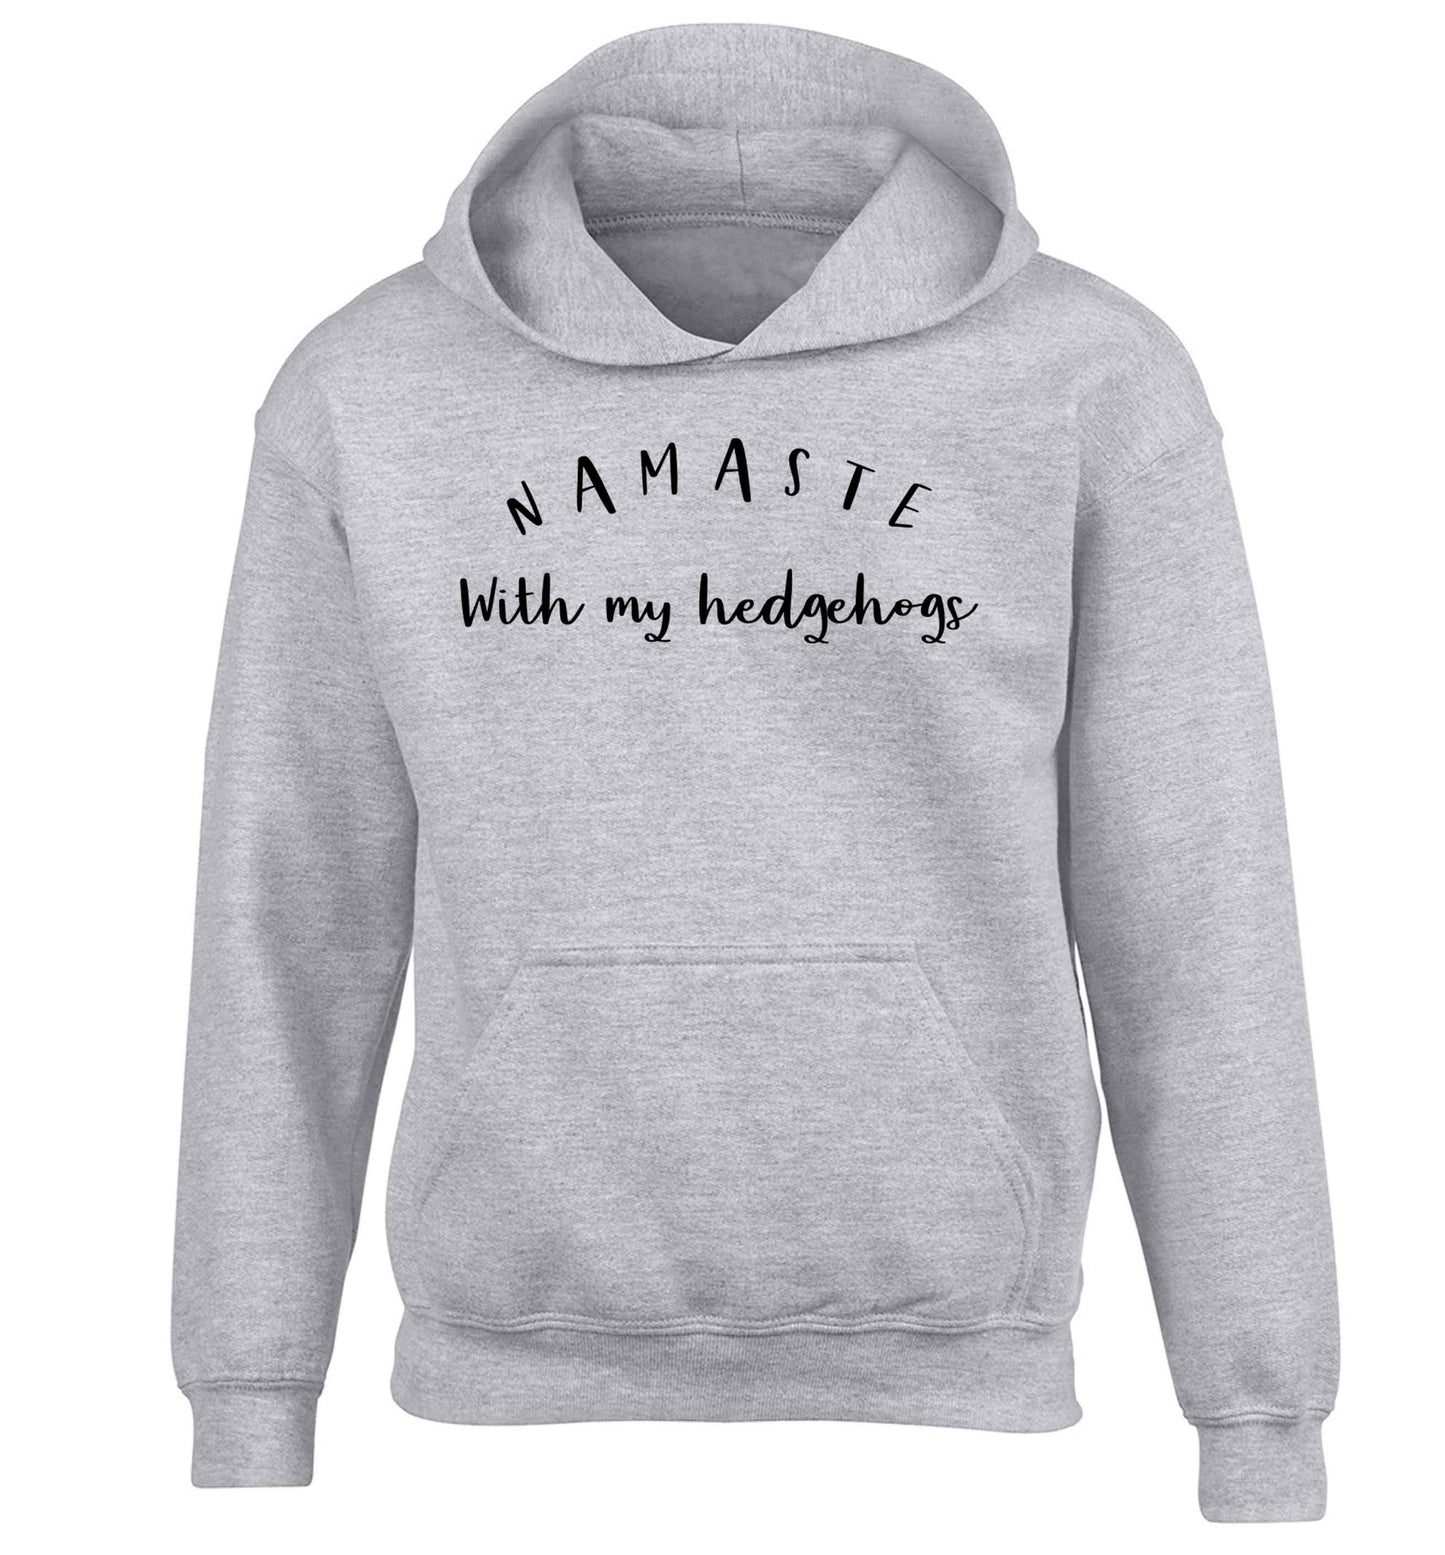 Namaste with my hedgehog children's grey hoodie 12-13 Years